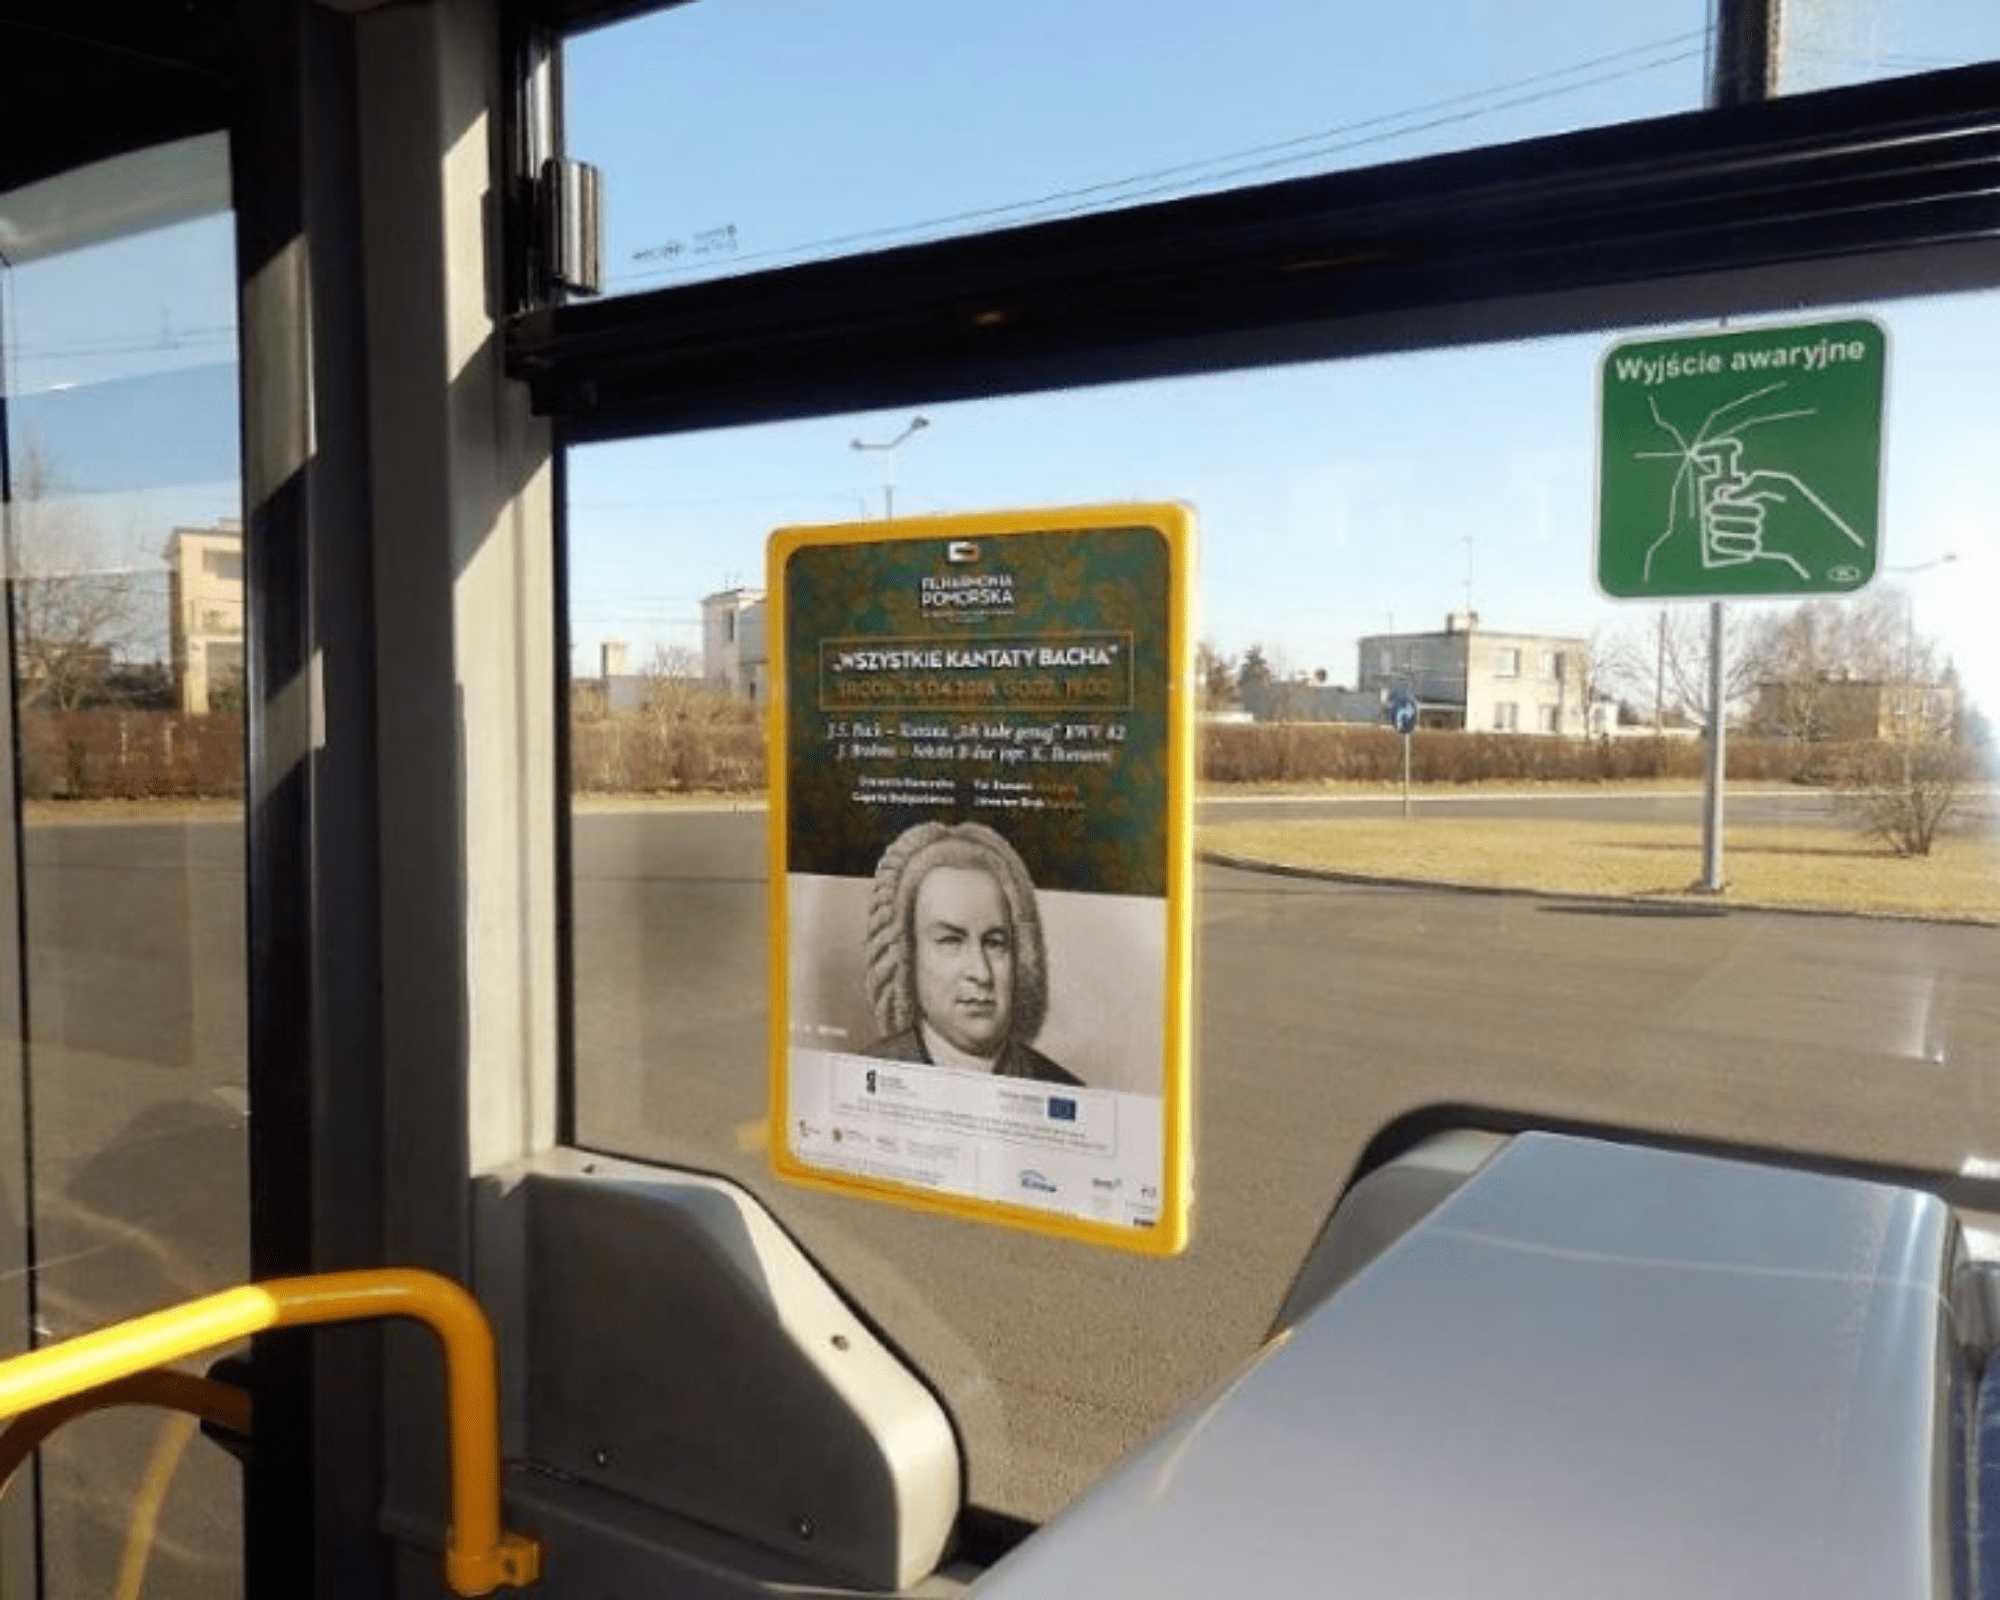 Reklama w autobusach Szczecin